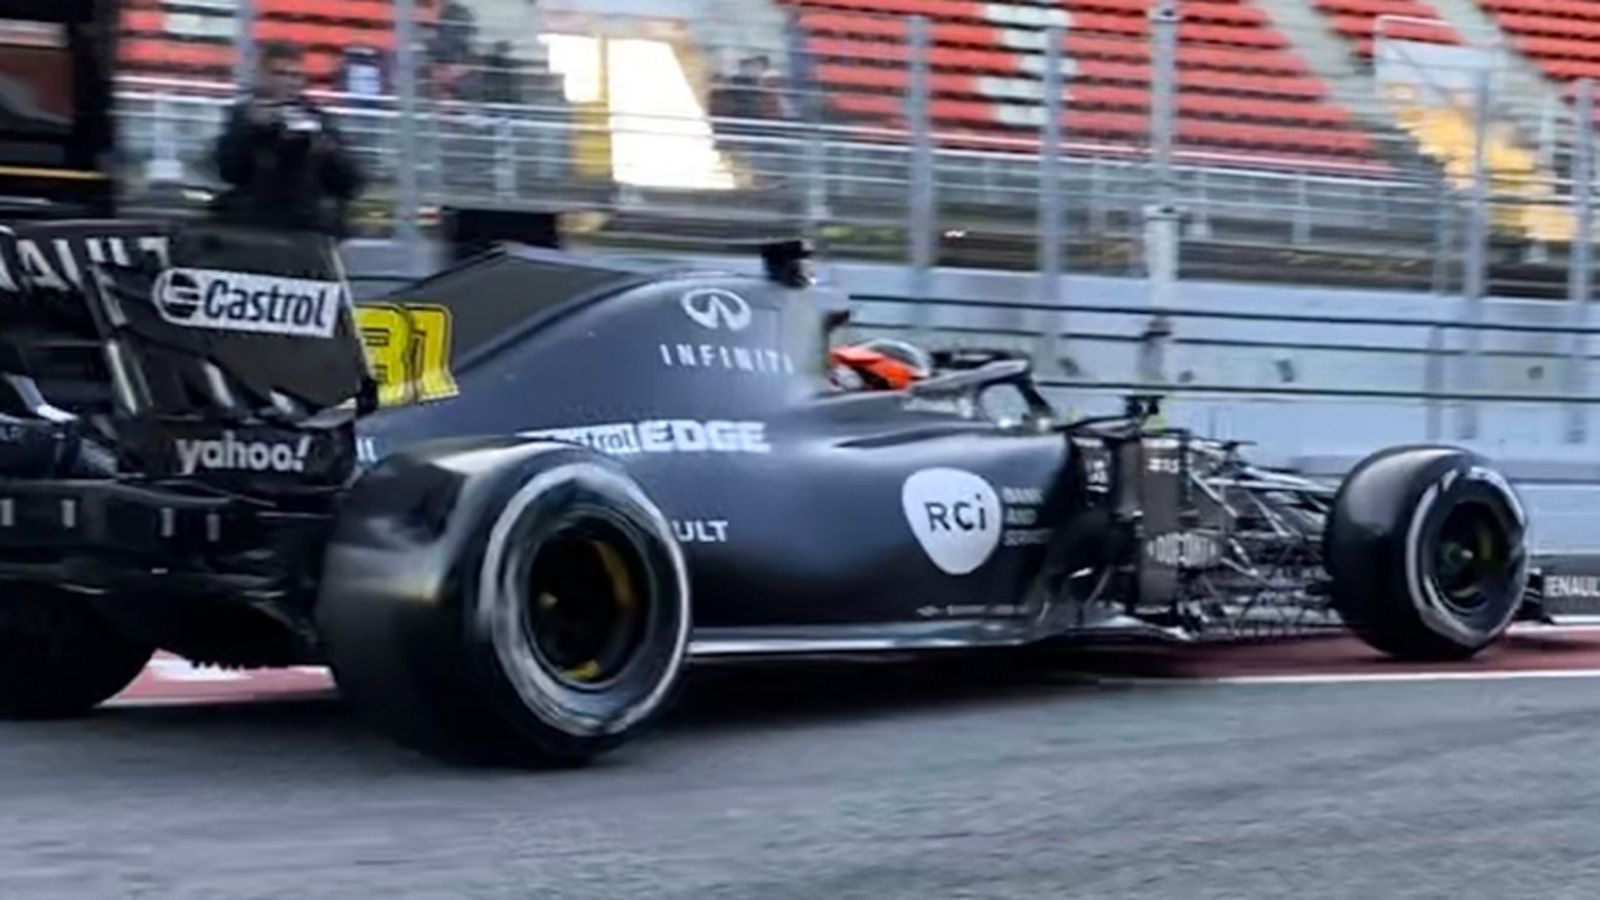 
                <strong>Renault F1 Team</strong><br>
                Da ist er! Der neue "RS20". Nachdem Renault beim eigentlichen Release das Auto noch nicht zeigen konnte, da der Wagen noch nicht fertig war, gibt es jetzt die ersten Bilder bei den Testfahrten in Barcelona. Beim eigentlichen Launch wurden nur animierte Bilder vom Boliden gezeigt. Jetzt endlich in echt. Der schwarze Look lässt das Gelb aus der vergangenen Saison mehr weichen. Jedoch ist das wohl nur das Design für die Testfahrten. Für den Saisonstart kommt das Gelb offenbar wieder zurück.
              